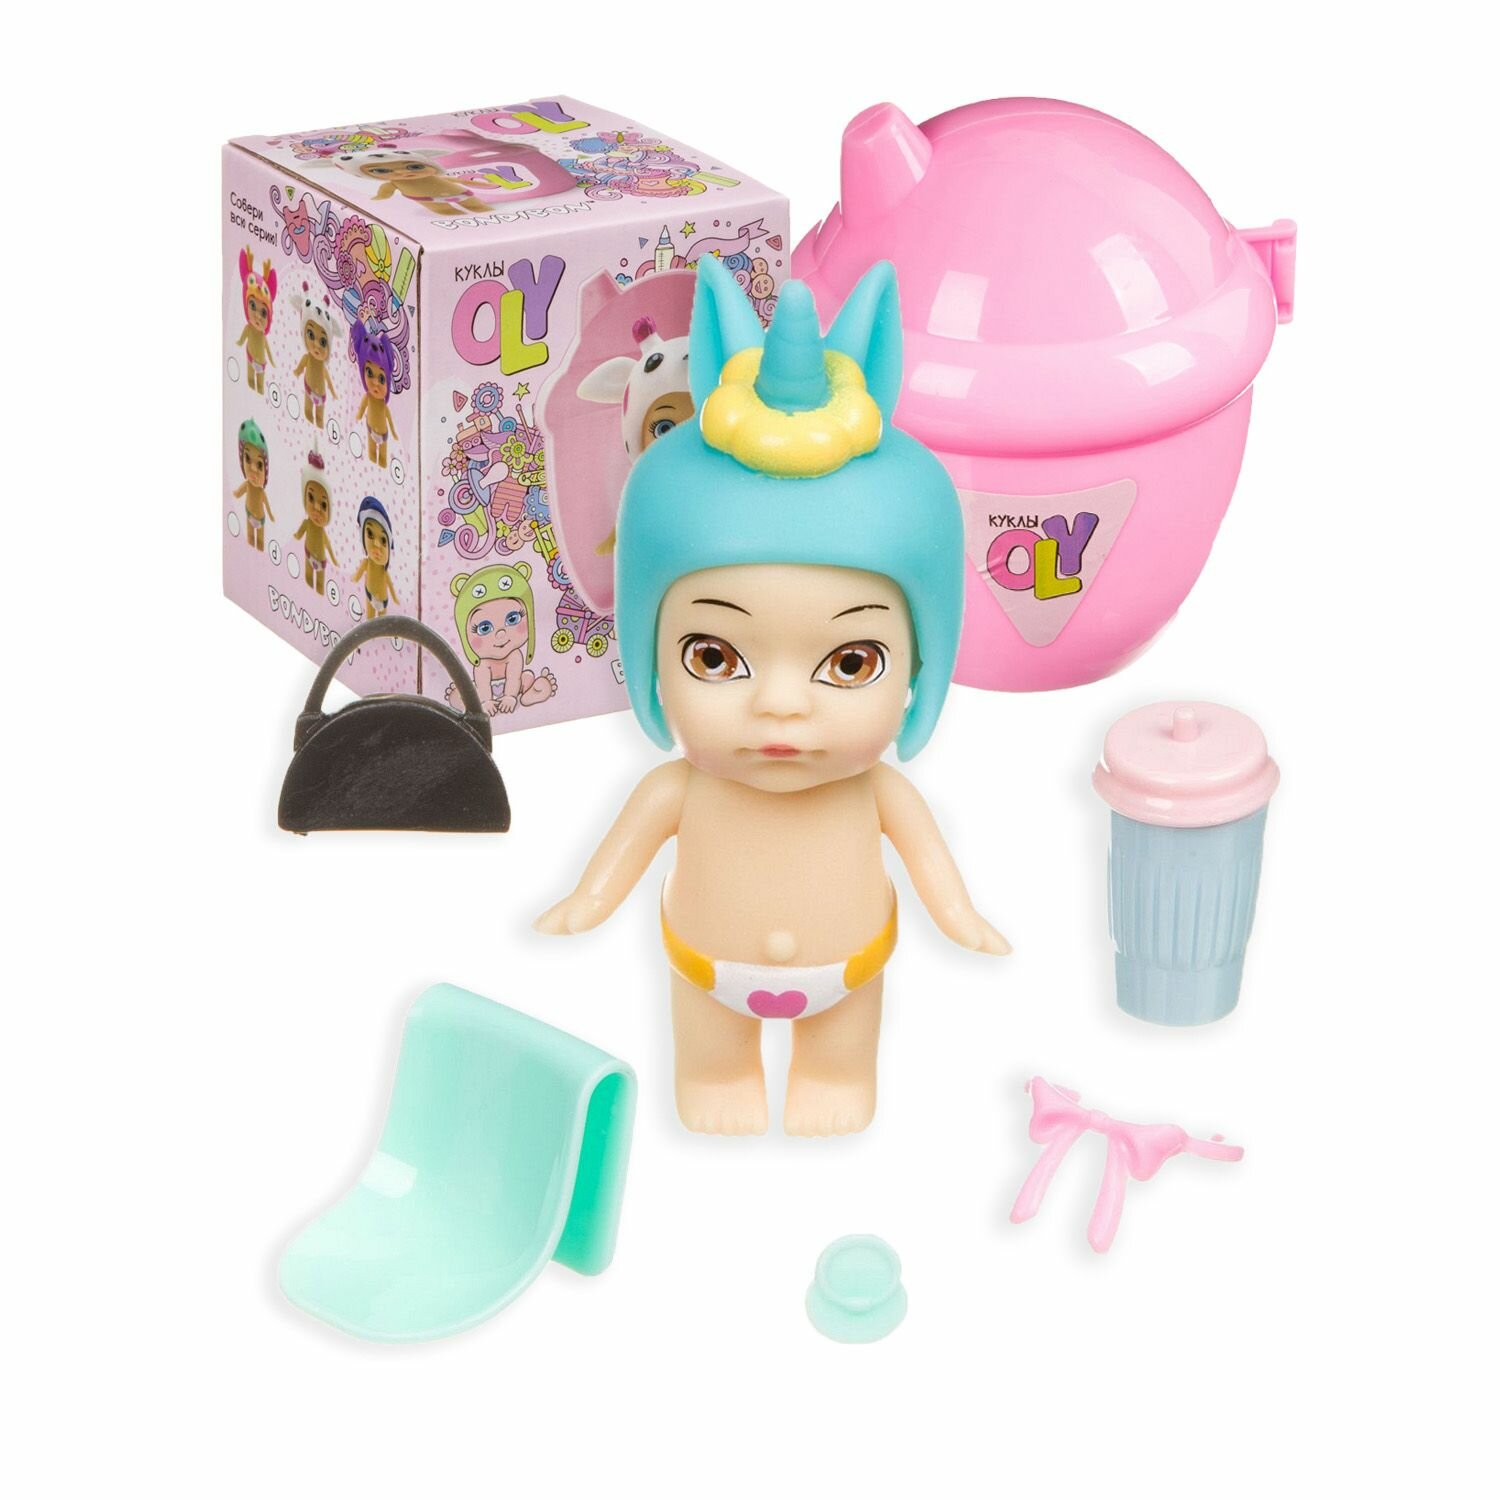 Кукла OLY мальчик-Е в шапочке с животным и аксессуарами в поильнике BOX 11.5*9.3*9.3 см